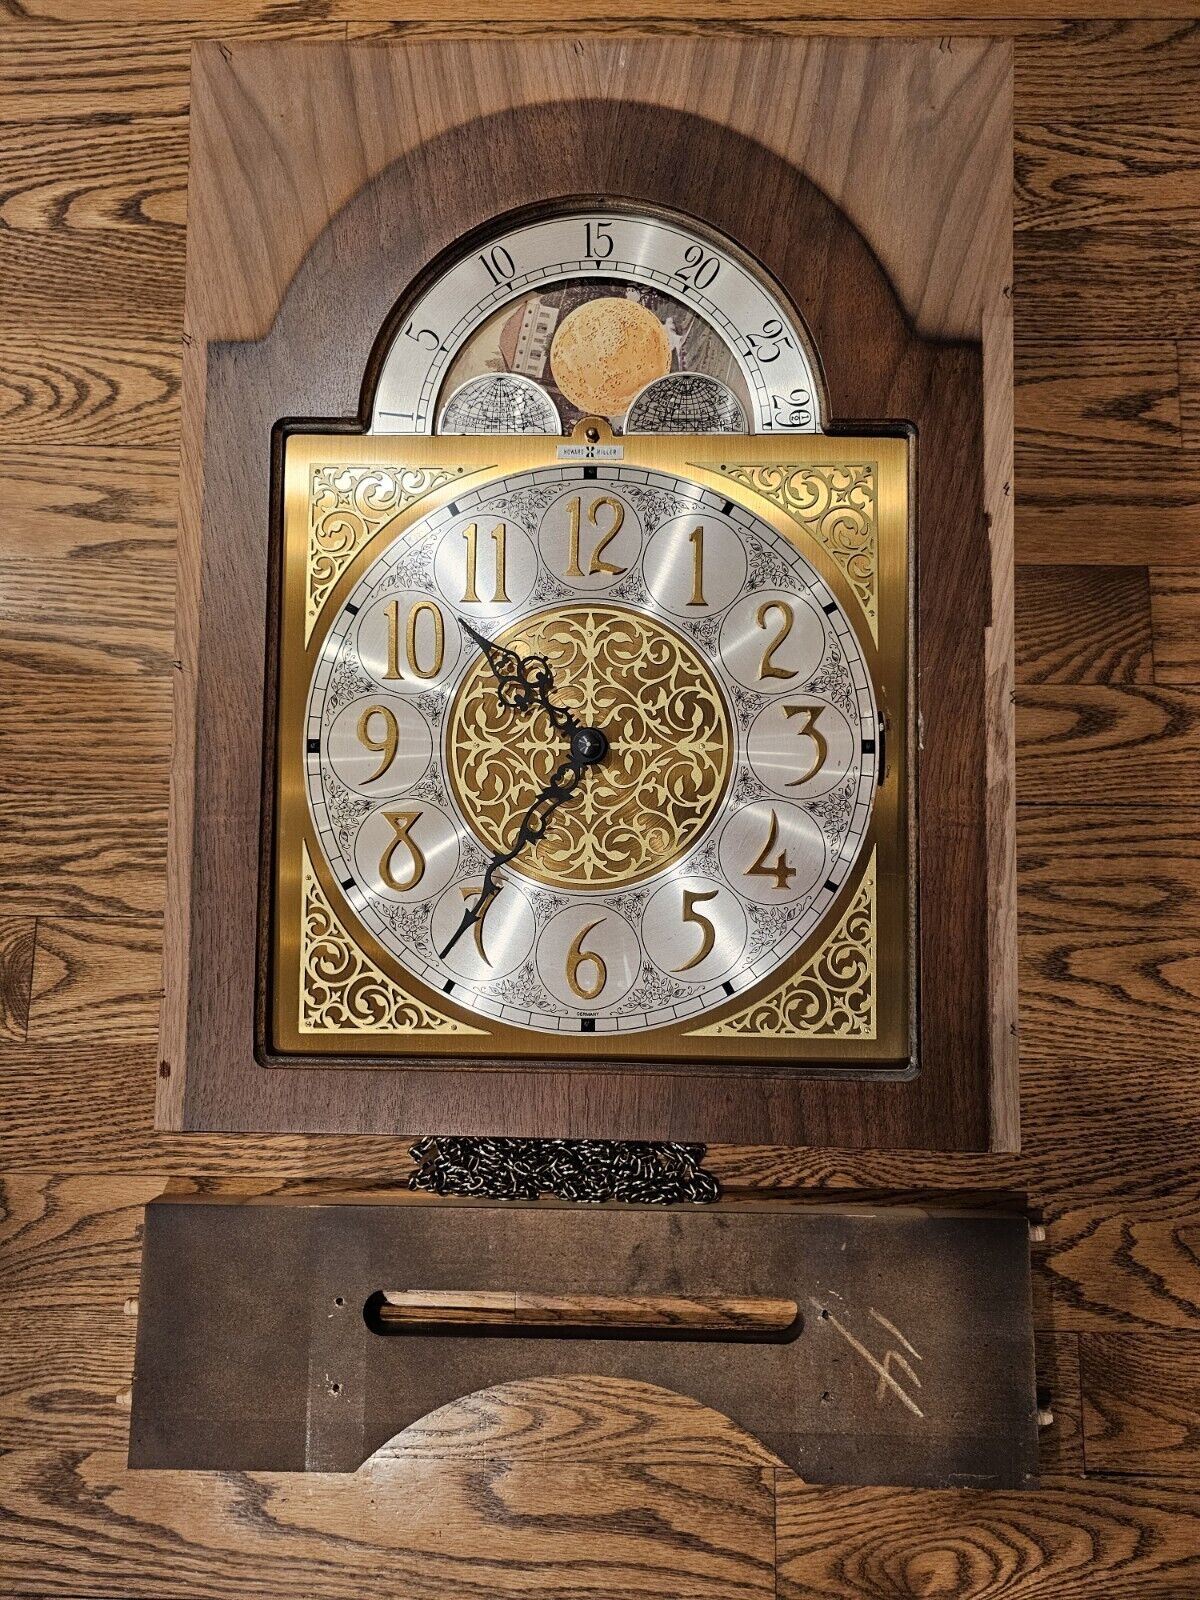 Howard Miller 4802 Tubular Grandfather Clock Urgos UW 03028 A Movement Dial Rare